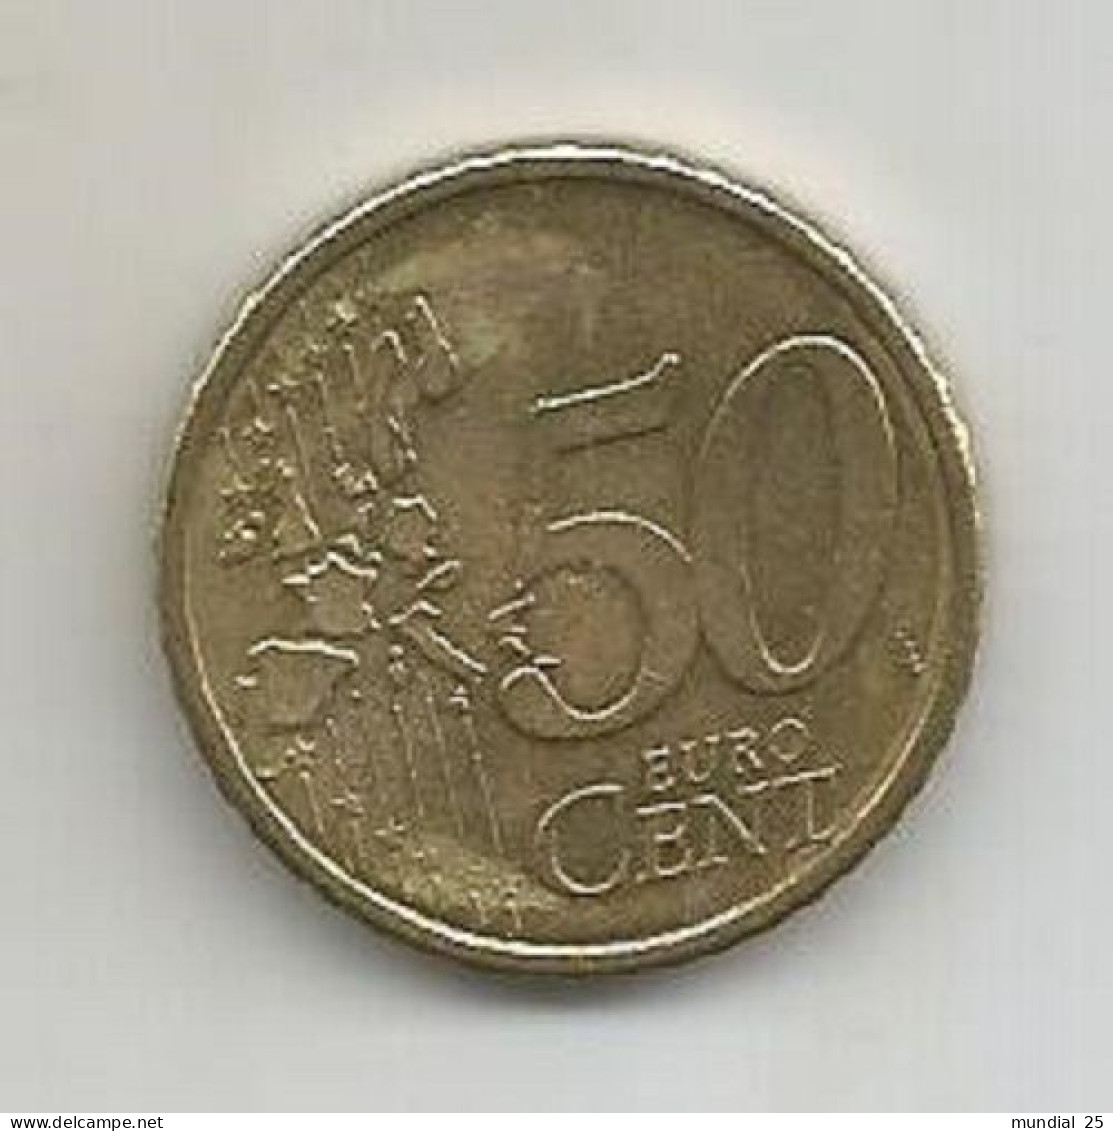 FINLAND 50 EURO CENT 2000 M - Finlandia